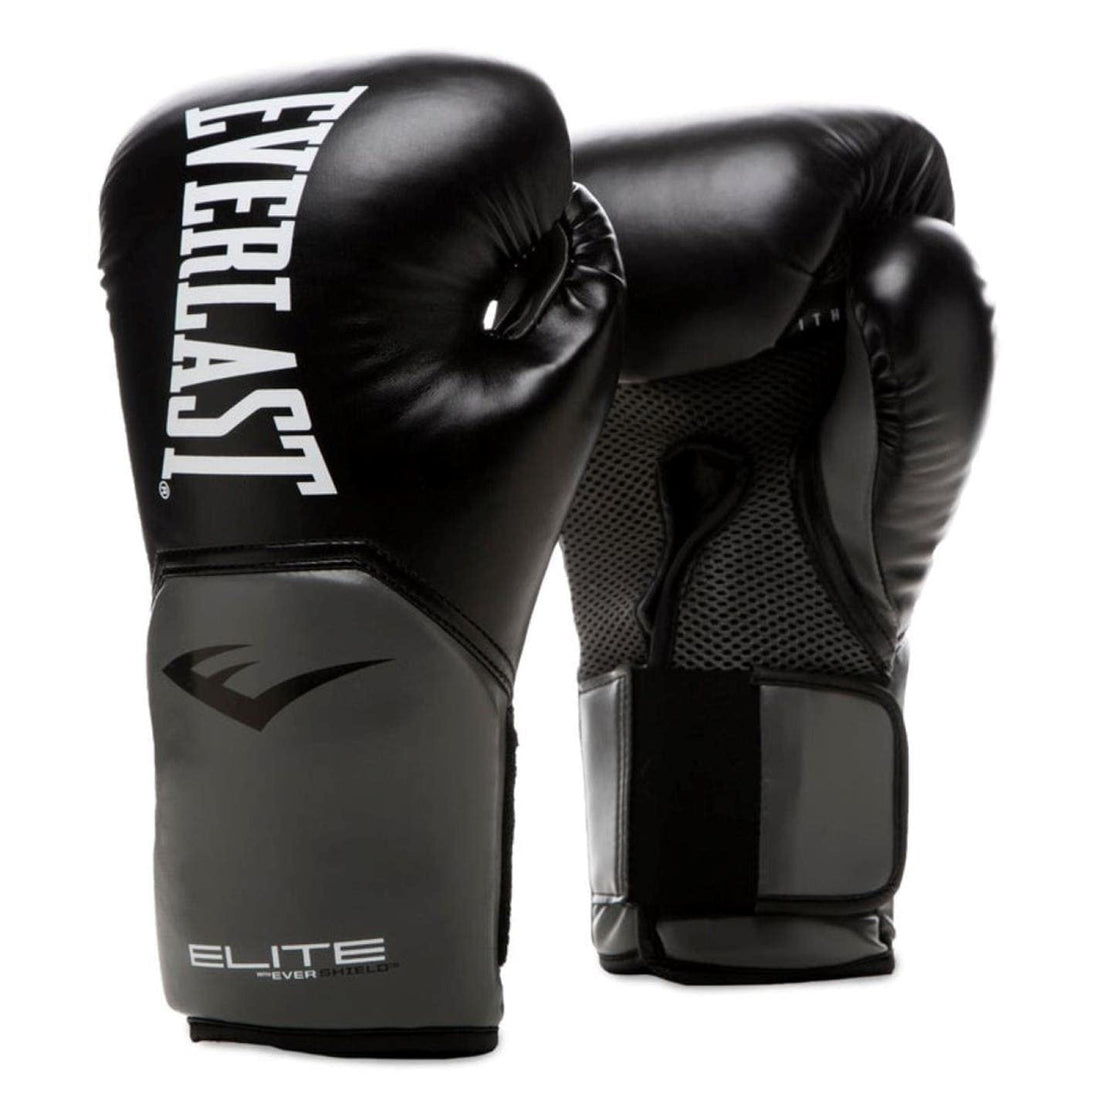 Everlast Pro Style Training Boxing Gloves